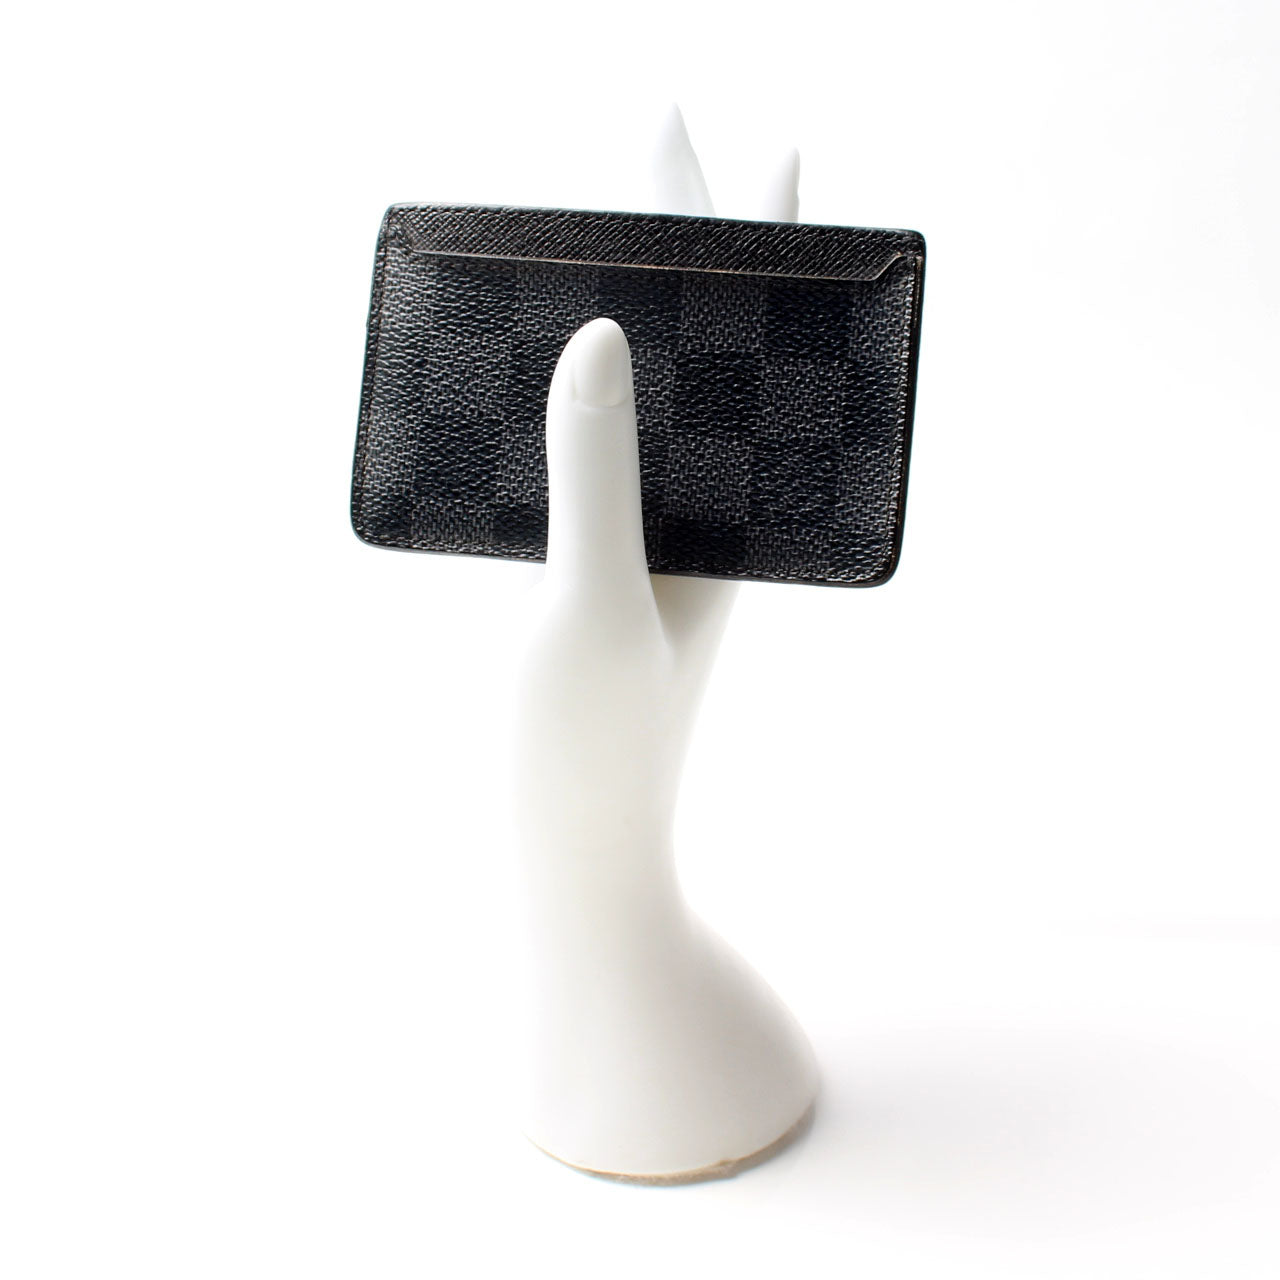 Neo Porte Cartes Card Holder Epi (ATX) – Keeks Designer Handbags